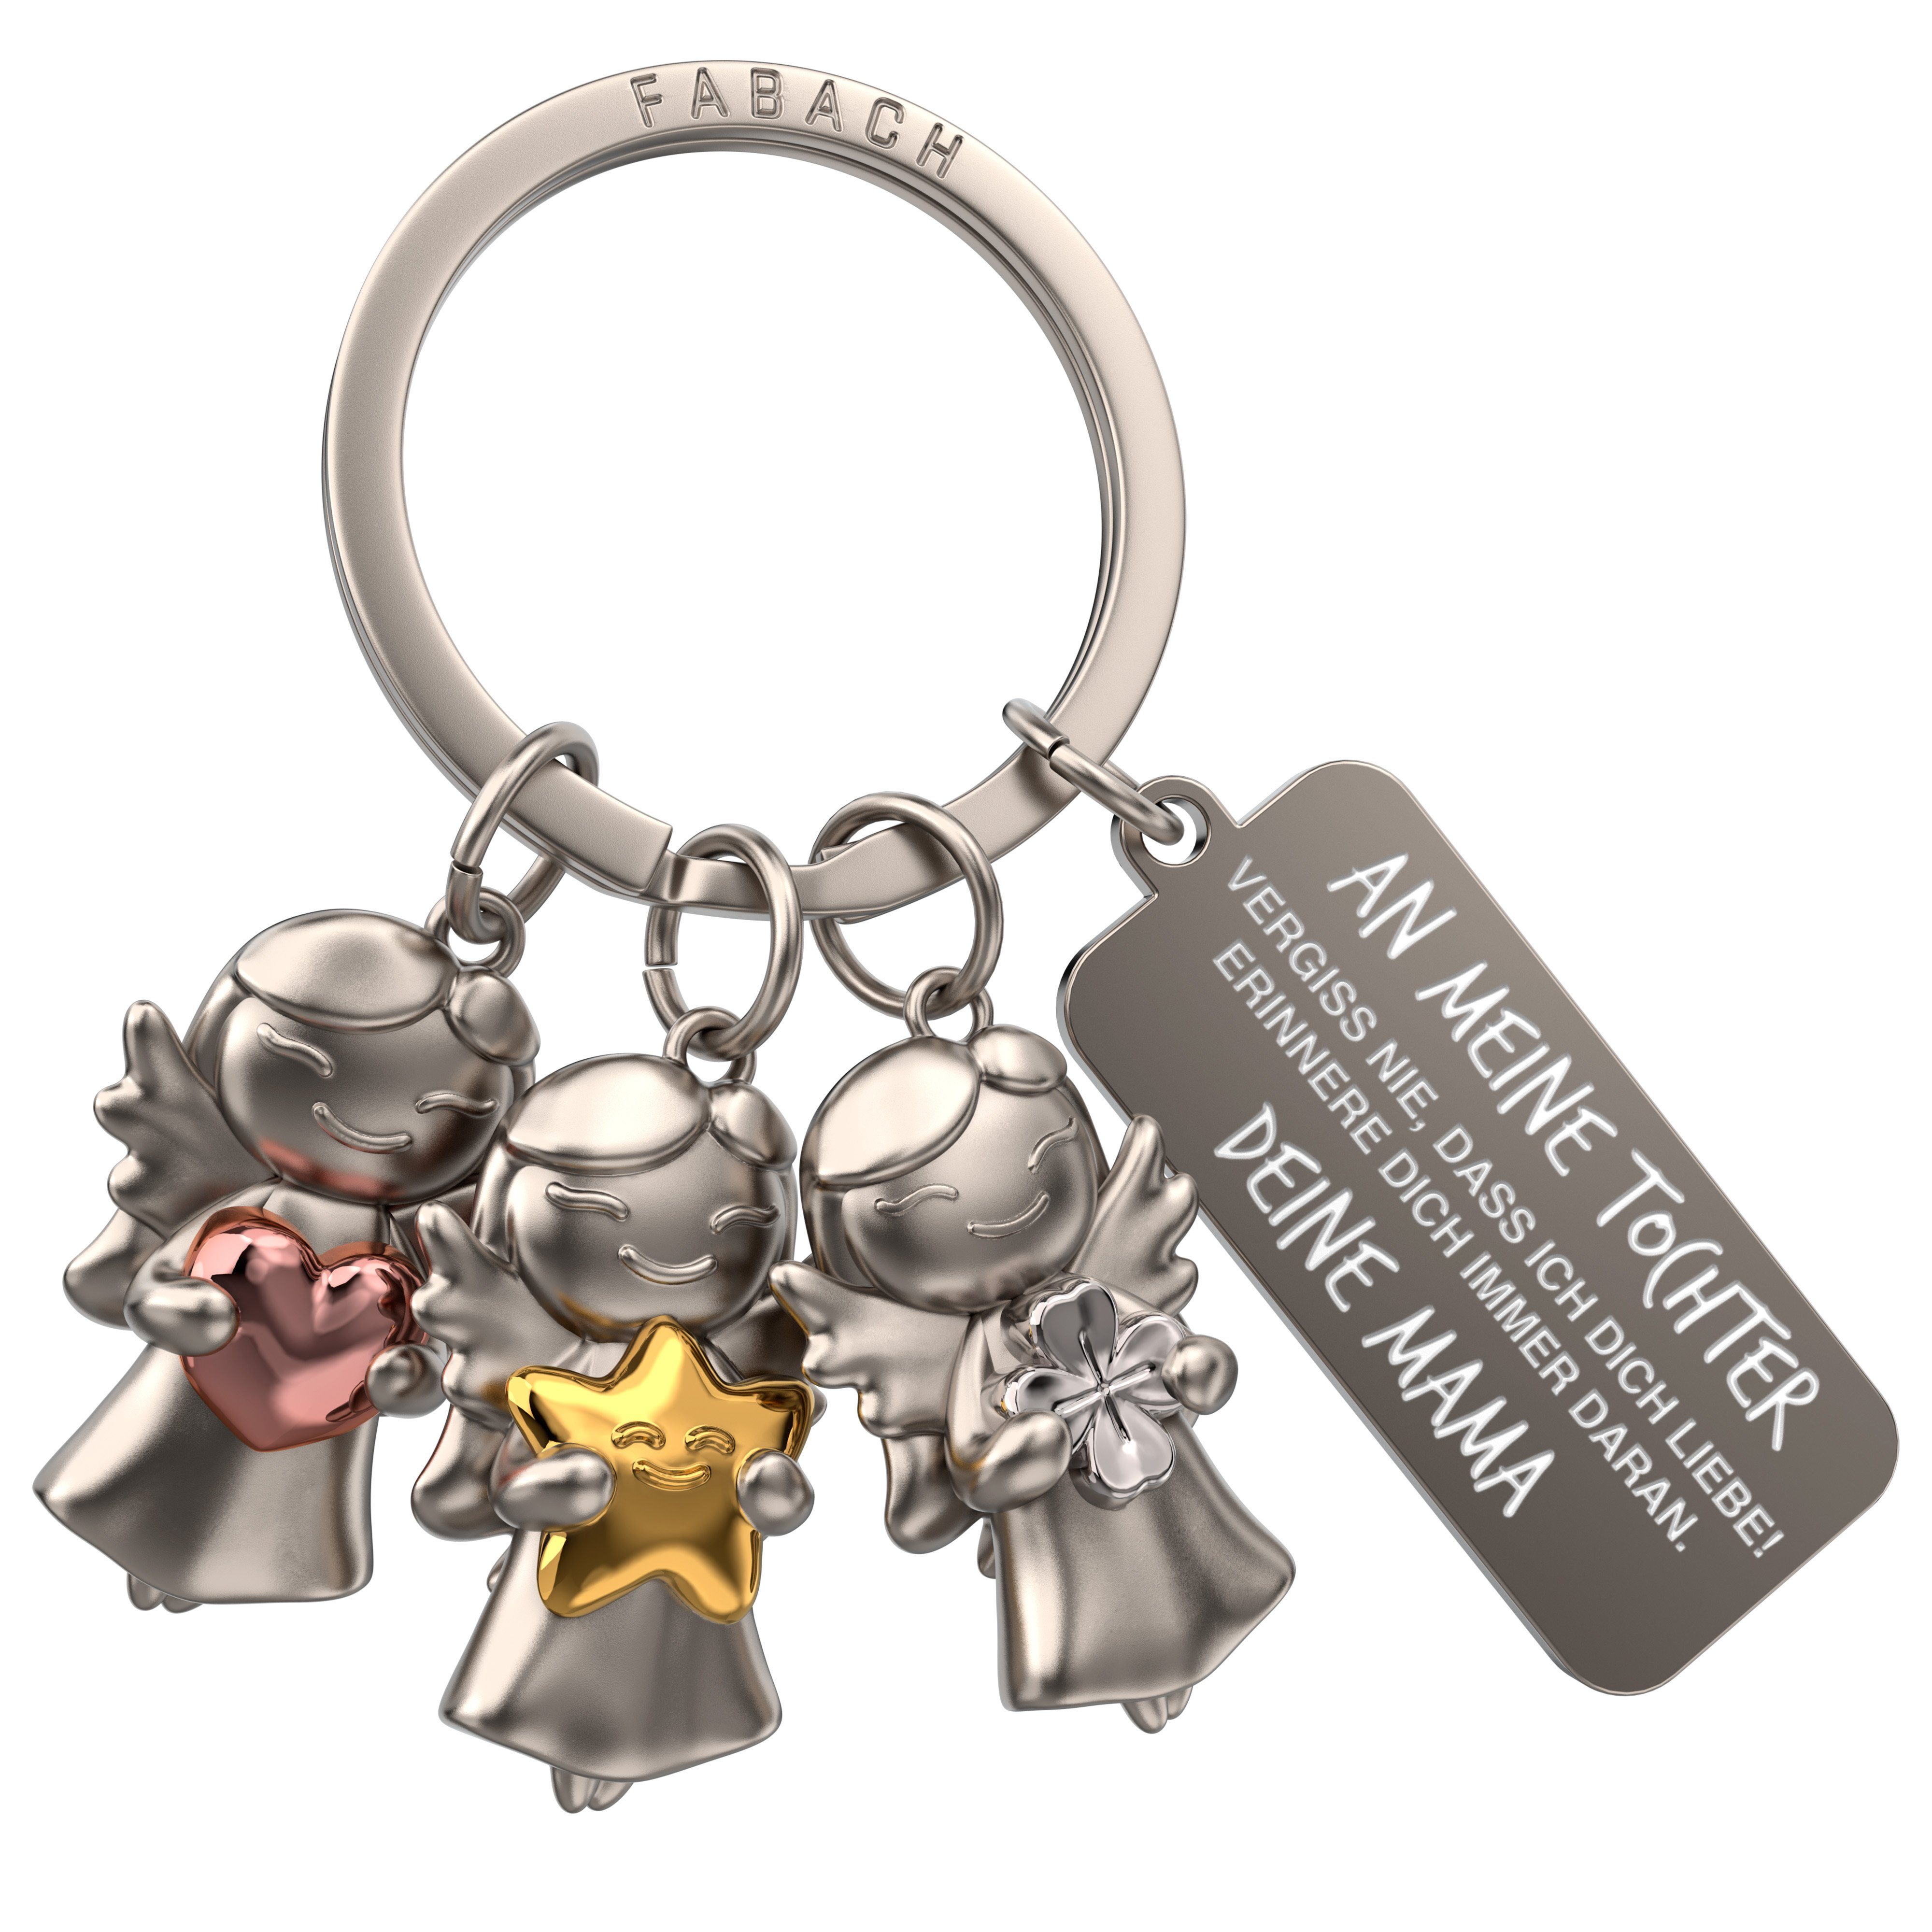 FABACH Schlüsselanhänger Schutzengel "3 Stars" mit Gravur "Vergiss nie, dass ich dich liebe" | Schlüsselanhänger